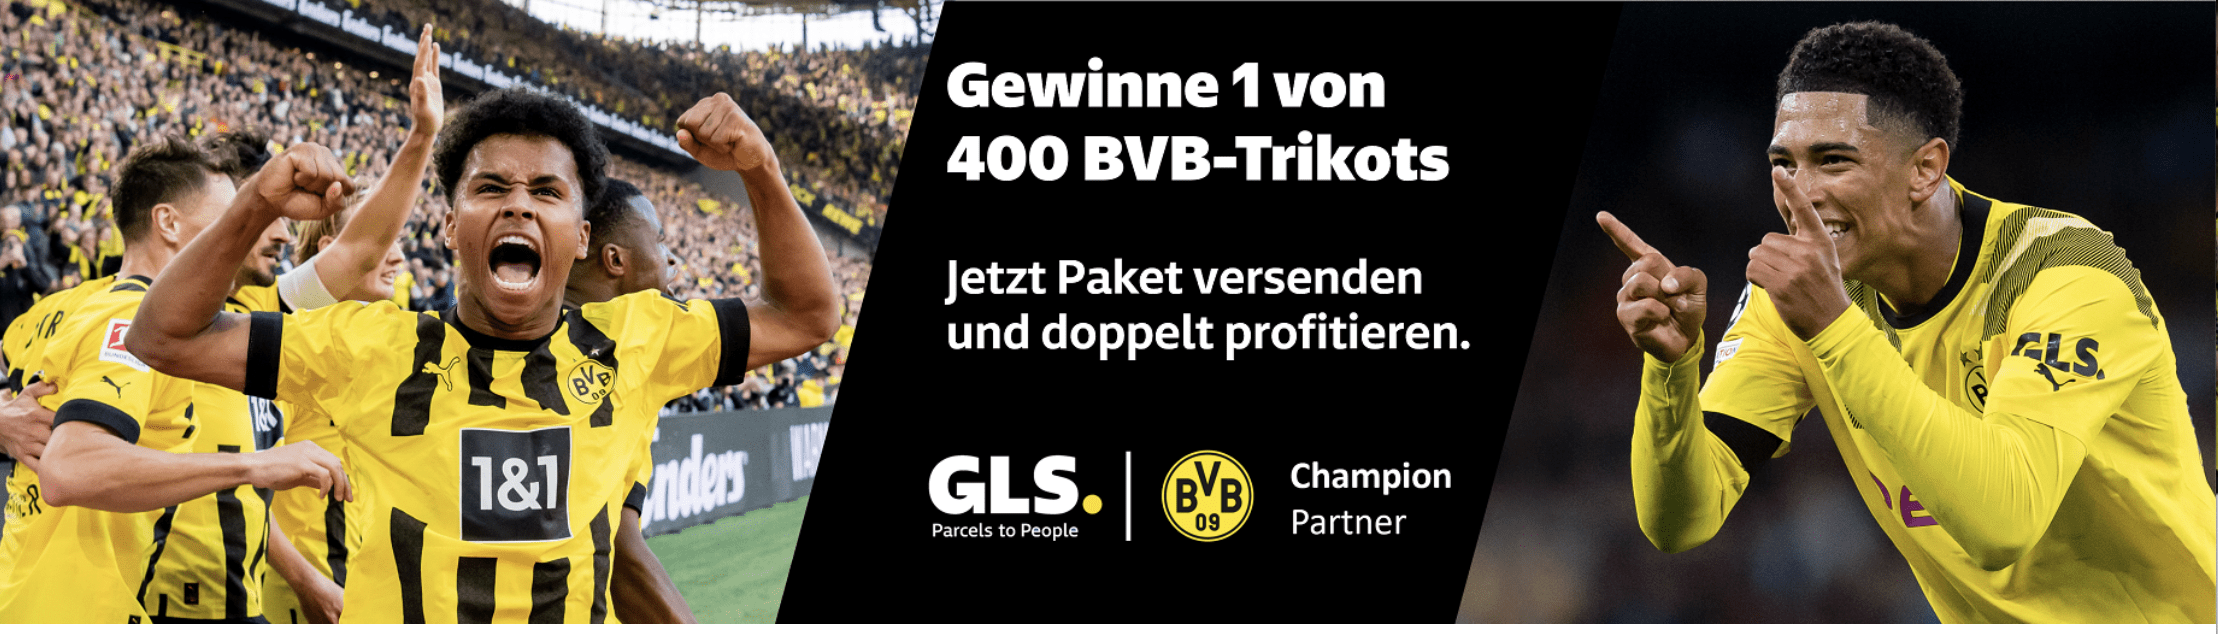 case_BvB Borussia Dortmund_GLS_Gewinnspiel